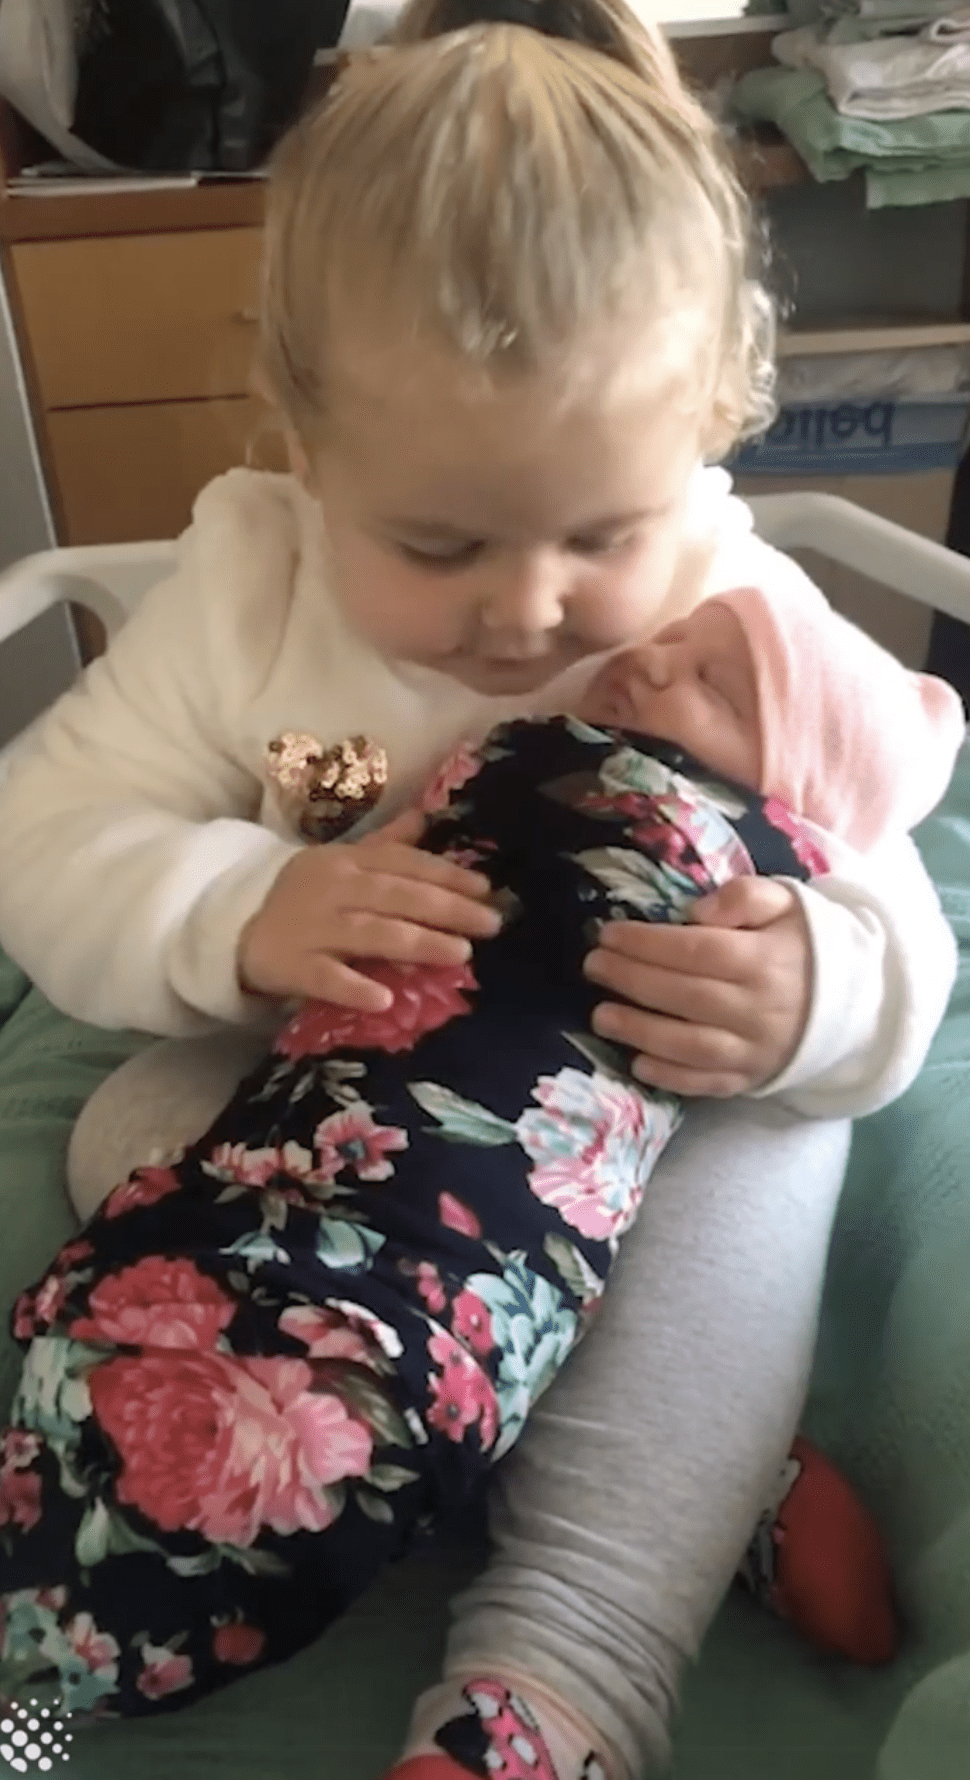 Molly acariciando a la bebé Cora. | Foto: Facebook/Newsflare